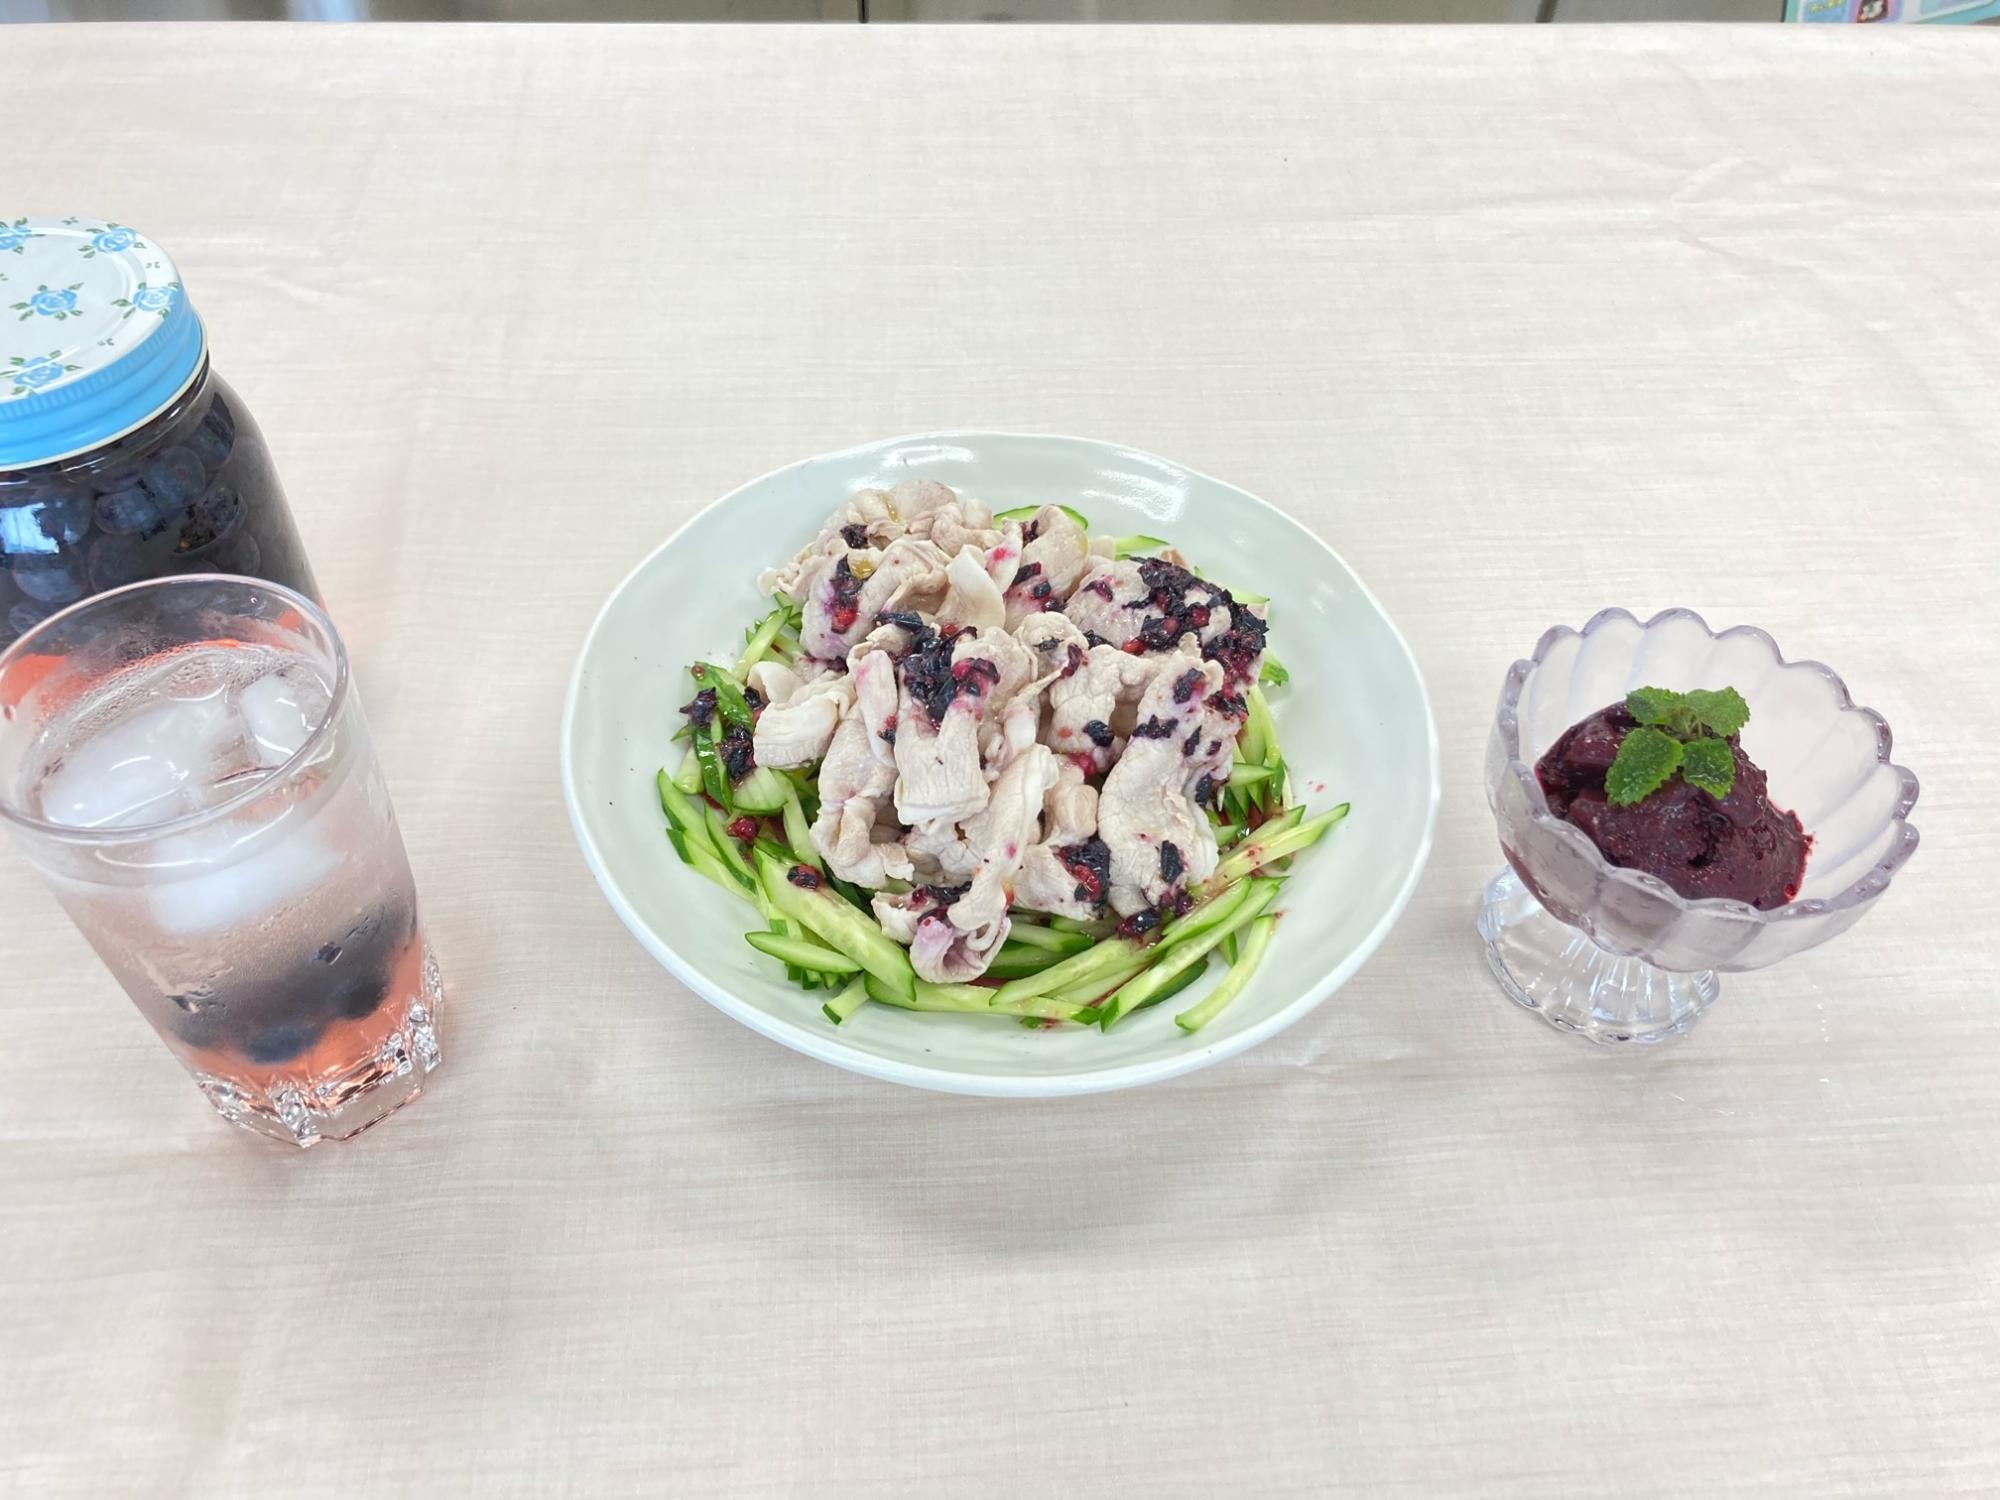 ブルーベリーを使用したサラダや飲み物が食卓テーブルの上に並んでいる写真